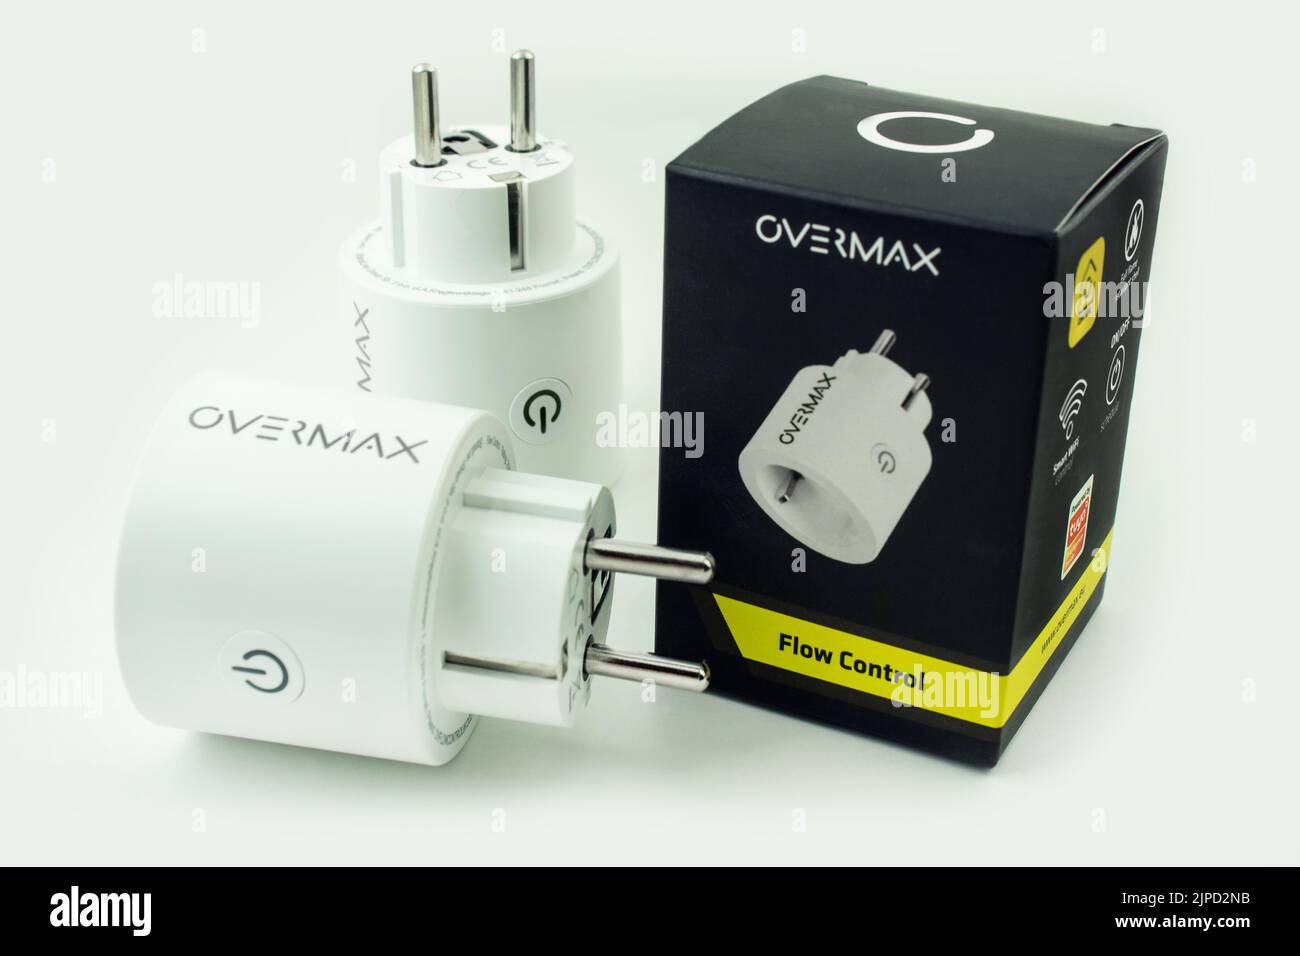 Stromverbrauchsmesser Overmax Flow Control und Verpackung Banque D'Images